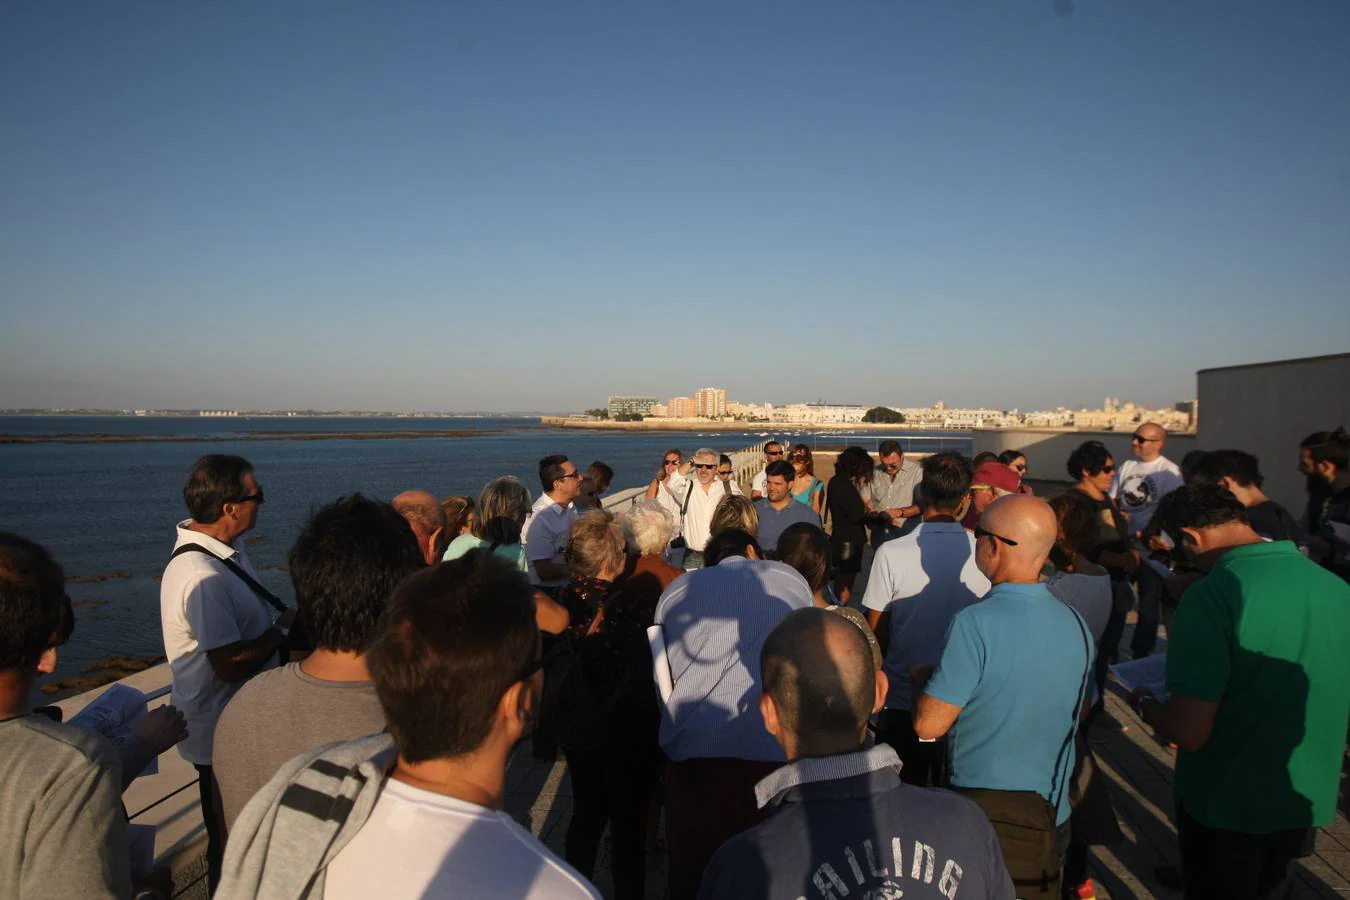 Cádiz revive el maremoto y sigue sin plan de evacuación ante un previsible tsunami